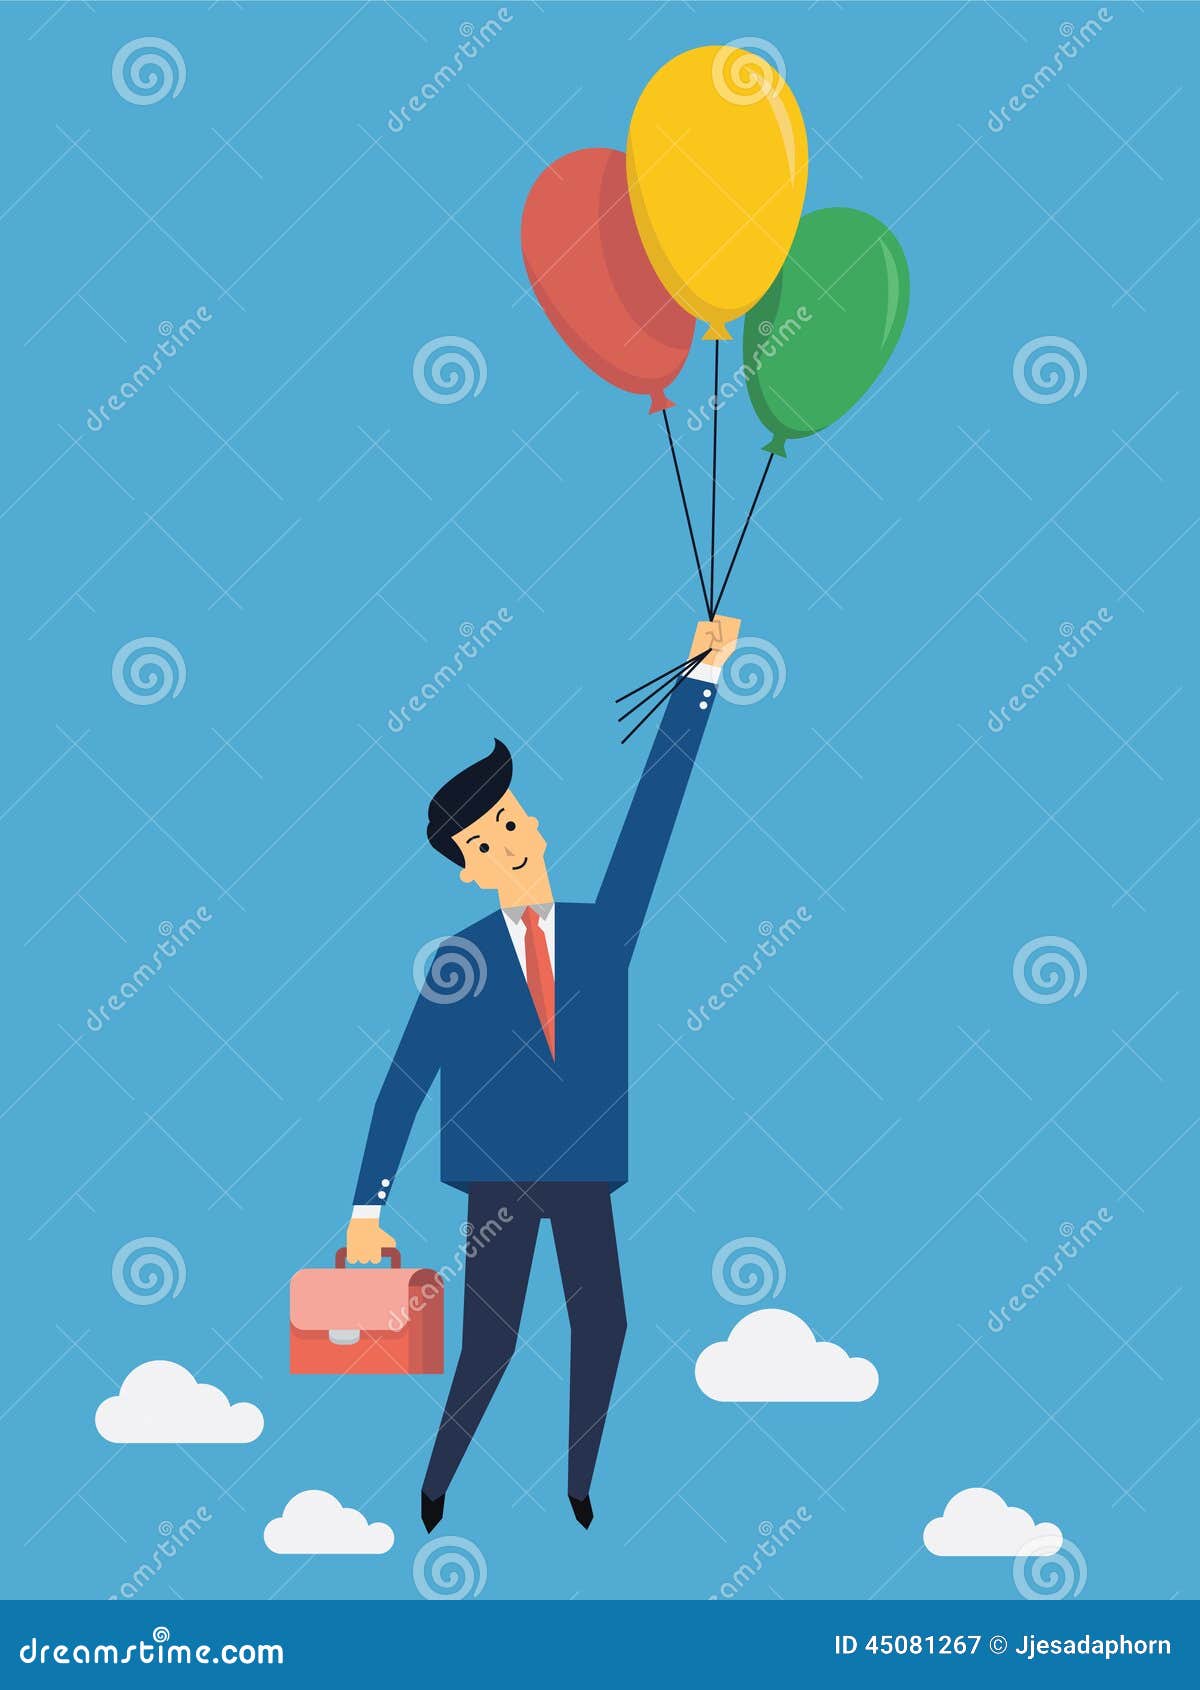 Бизнес с шарами. Обложка для бизнеса шариков. Man with Balloons logo.